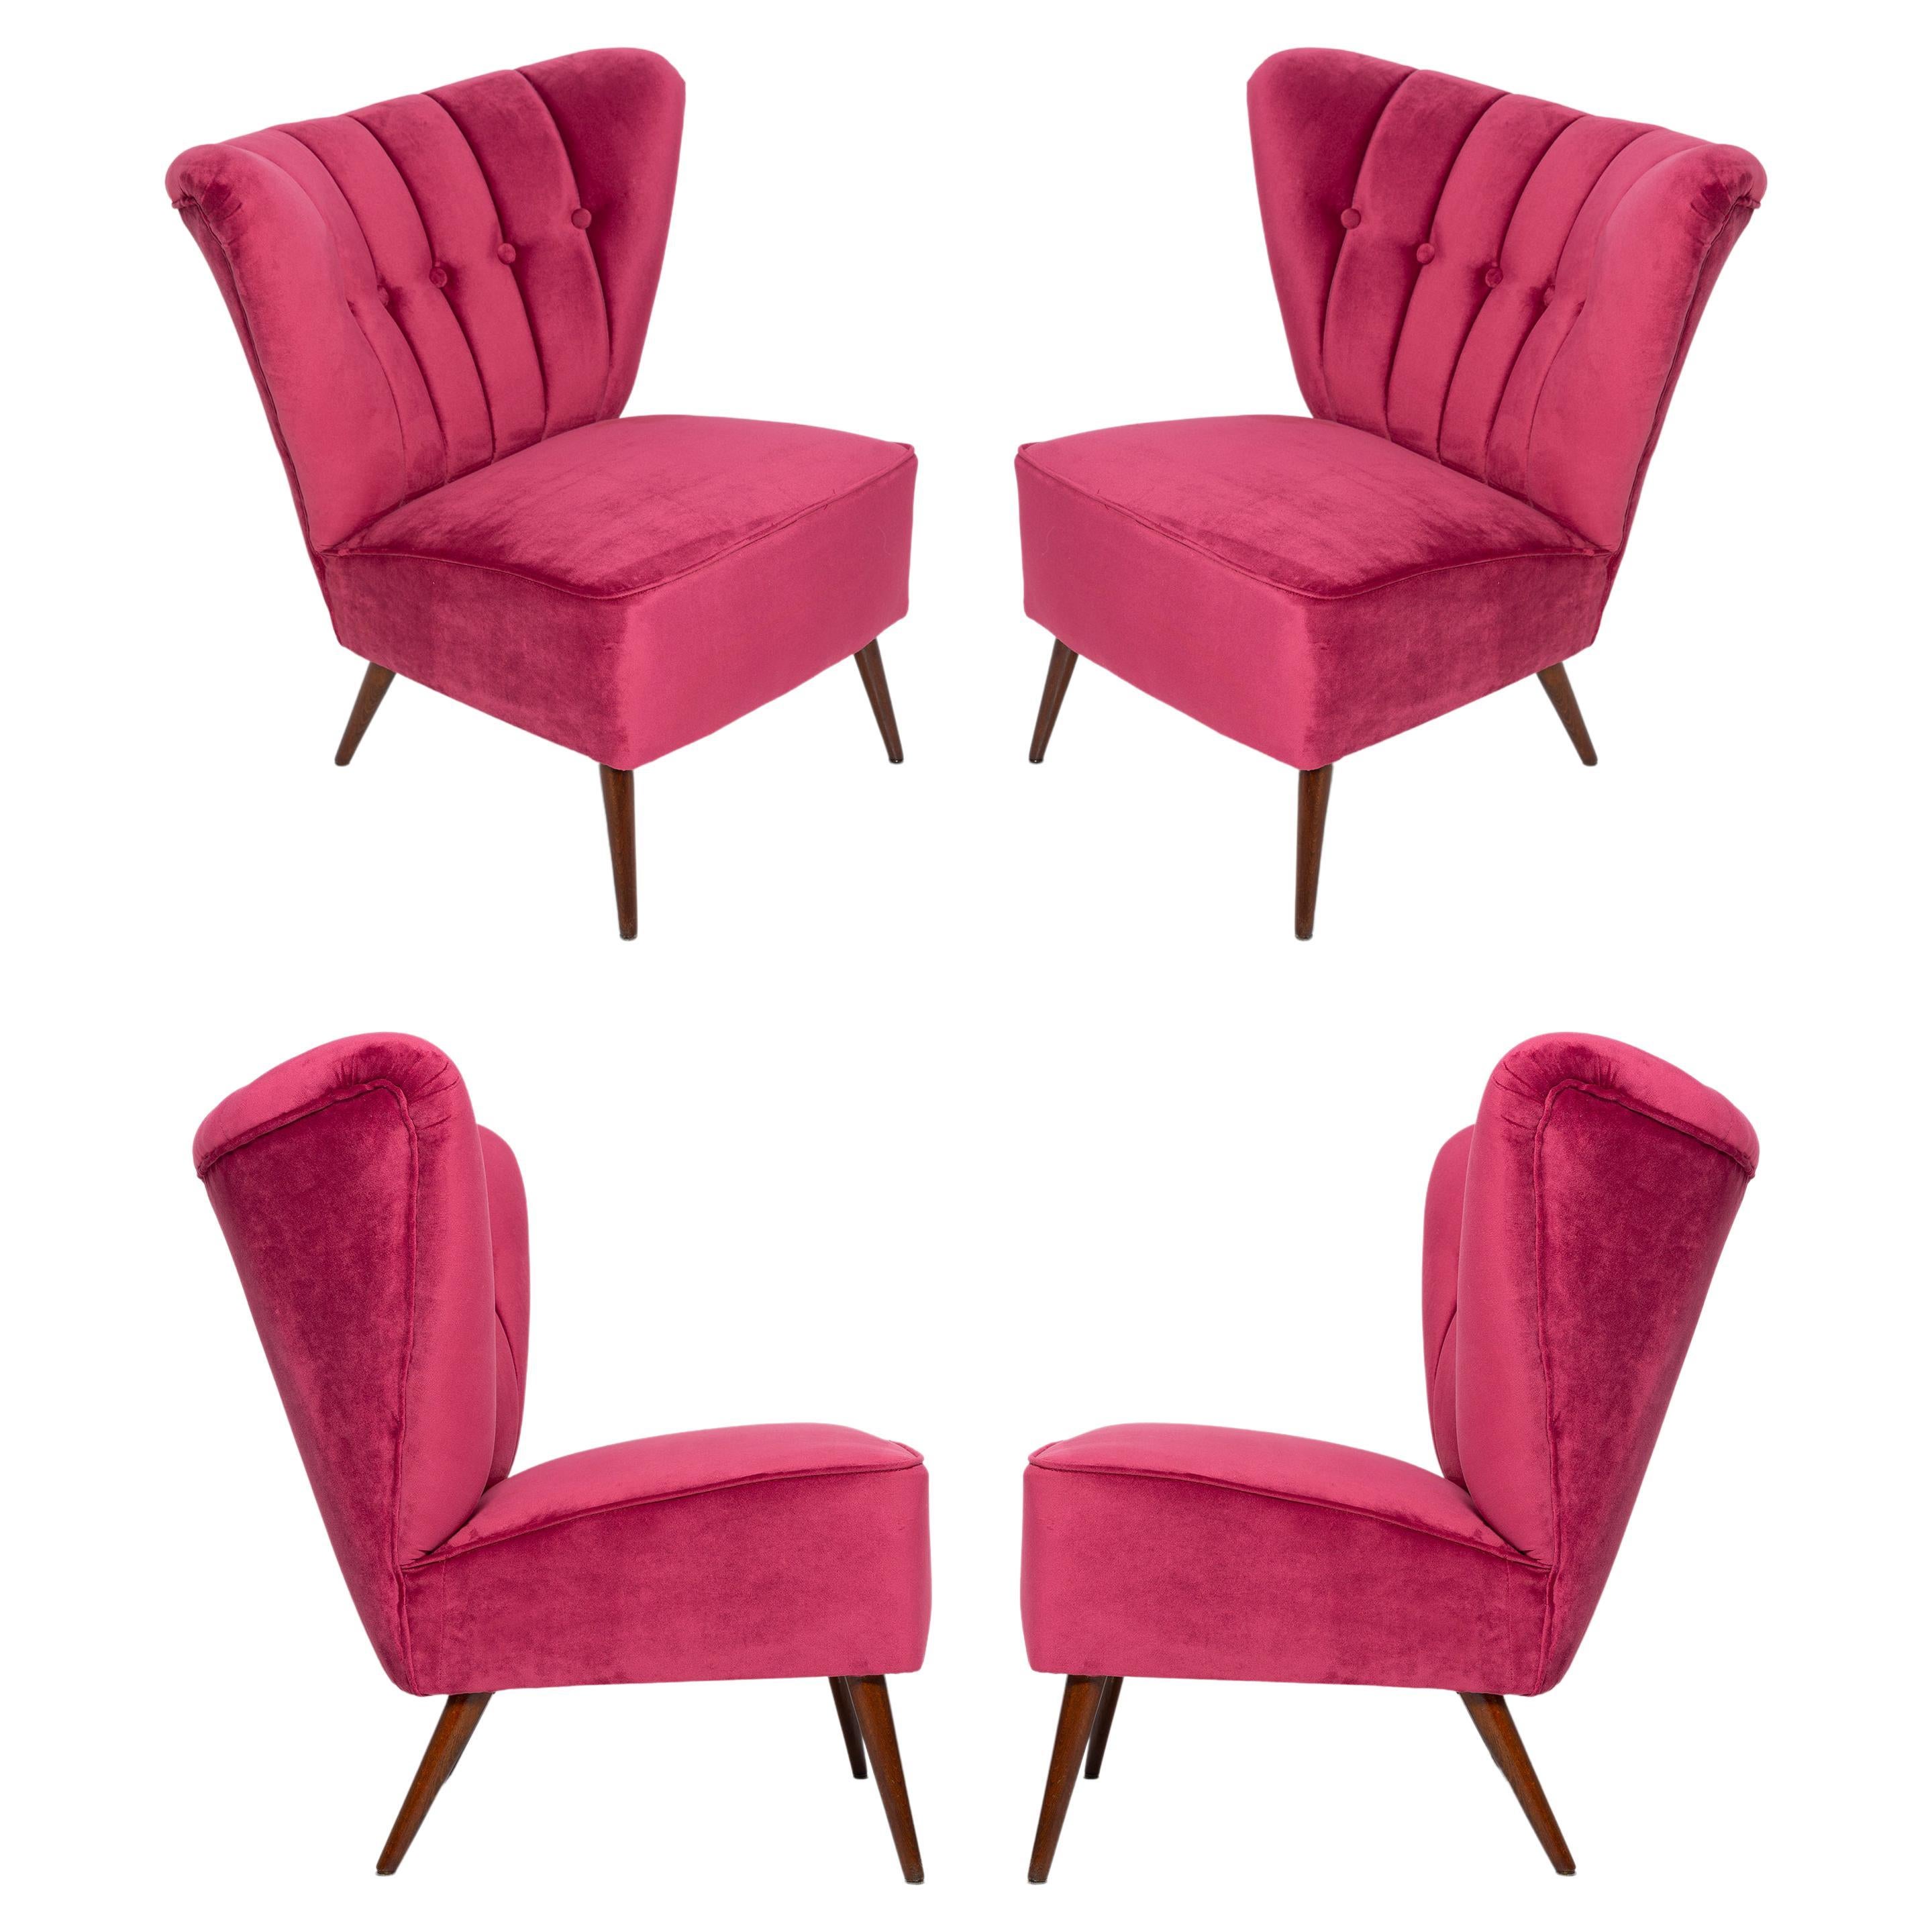 Quatre fauteuils club en velours rose magenta du milieu du siècle dernier, Europe, années 1960